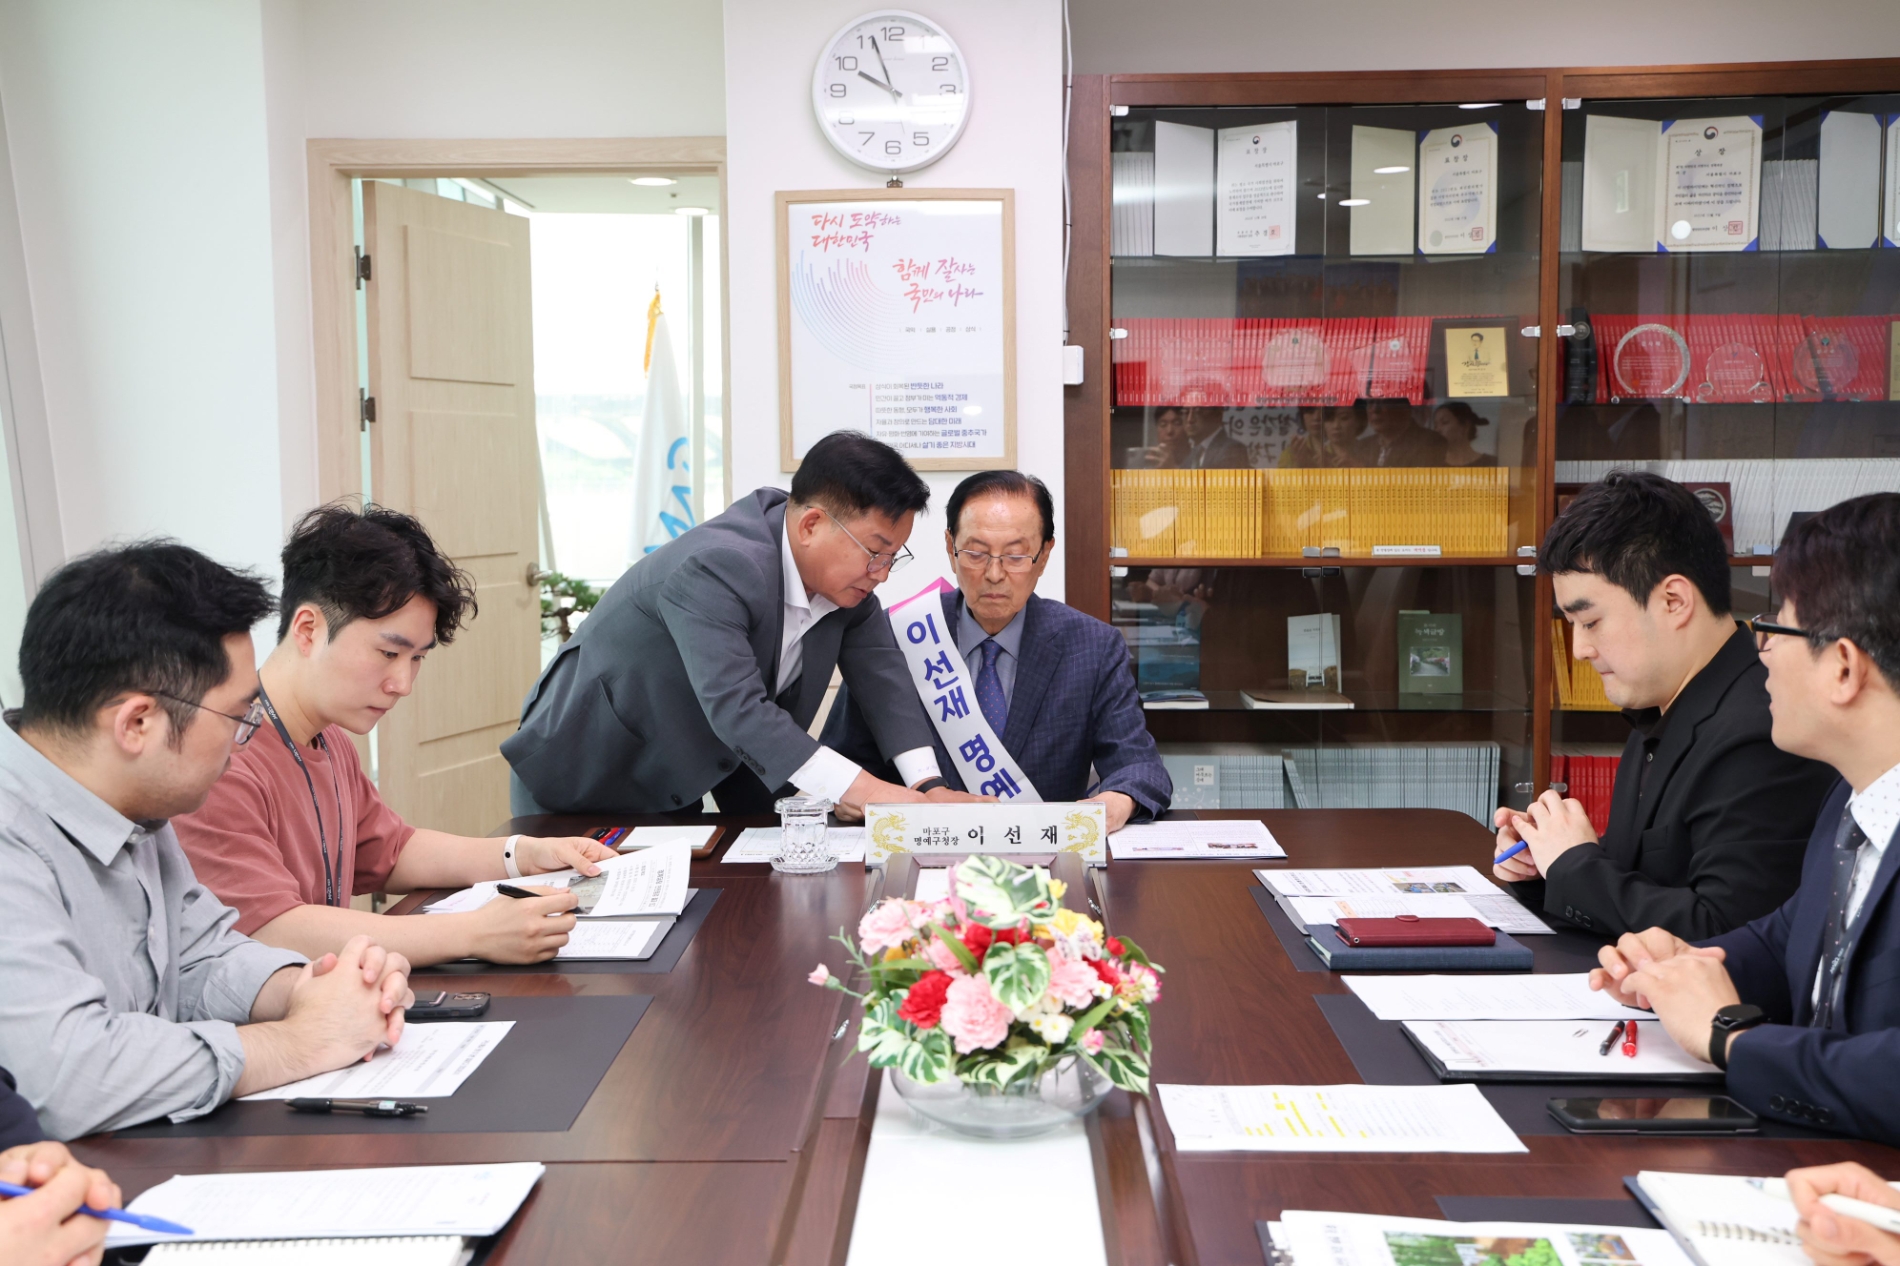 박강수 마포구청장(가운데 왼쪽)과 이선재 명예구청장이 5월31일 구청 정책회의실에서 마포부 직원들에게 민원보고를 받고 있다./사진제공=마포구